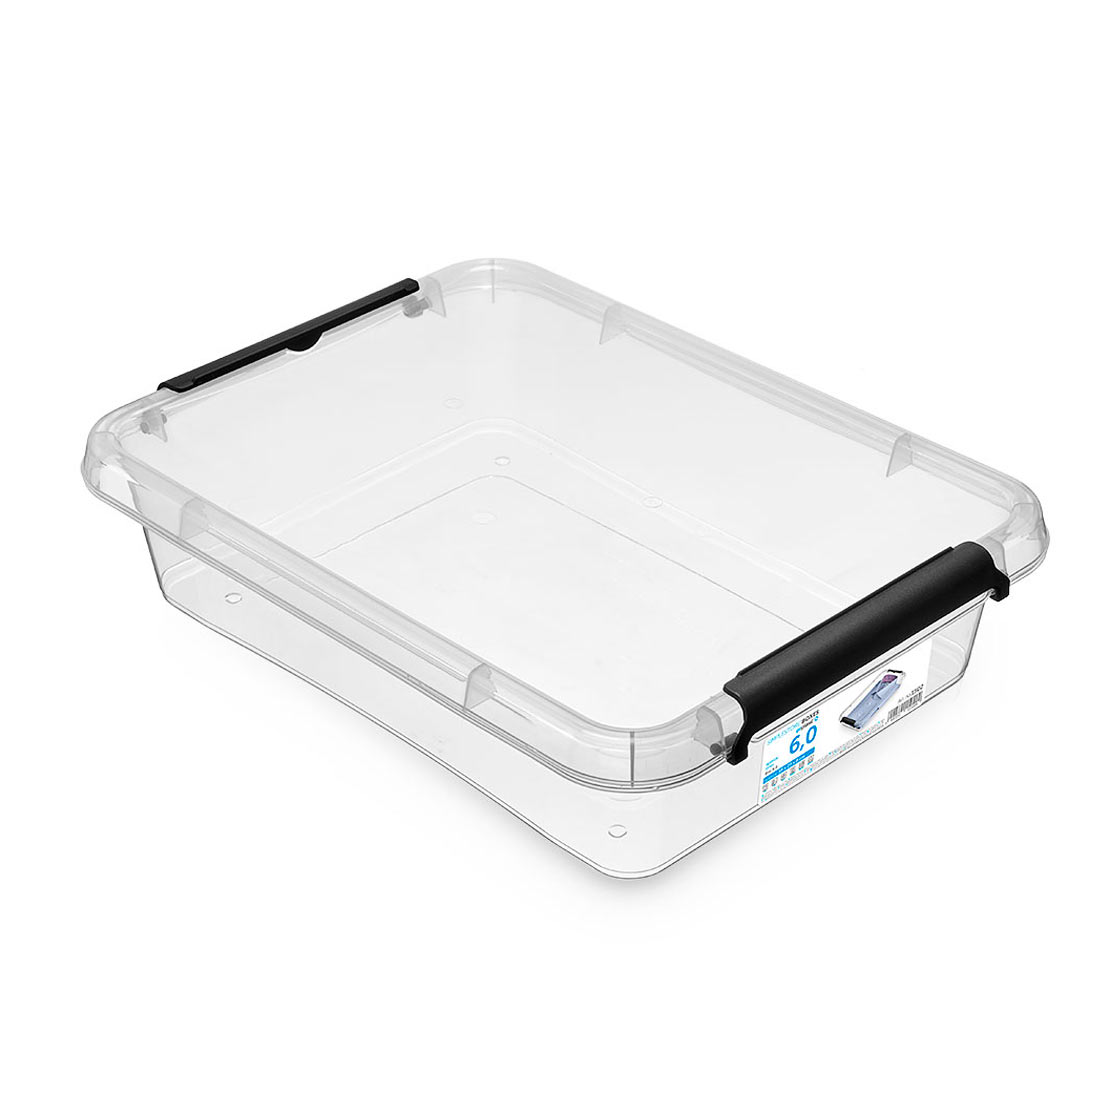 SimpleStore 1502 Transparent storage container